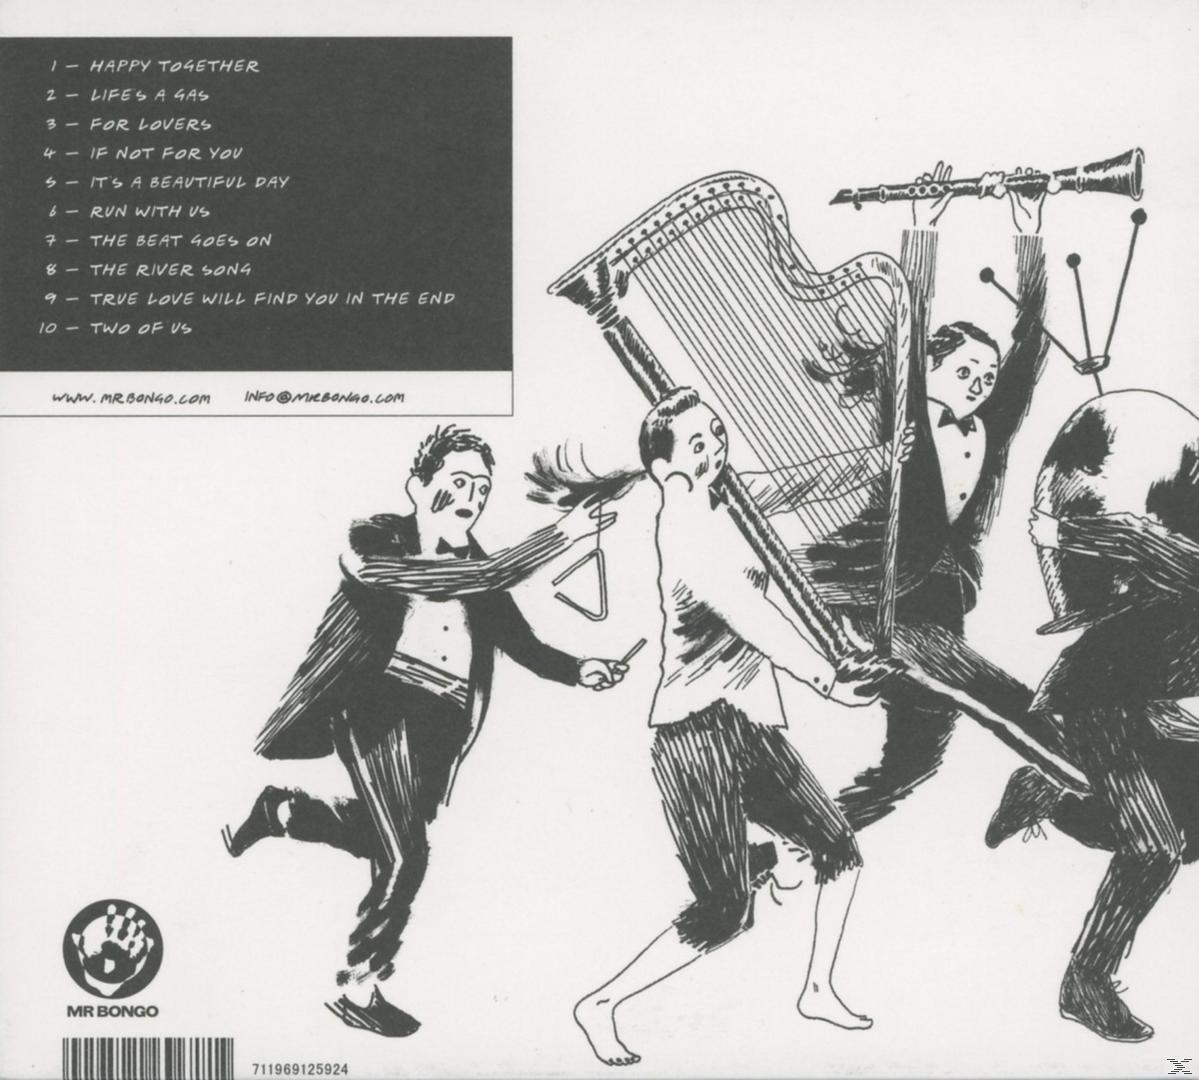 Orchestra Runaway - Orchestra (CD) - Runaway